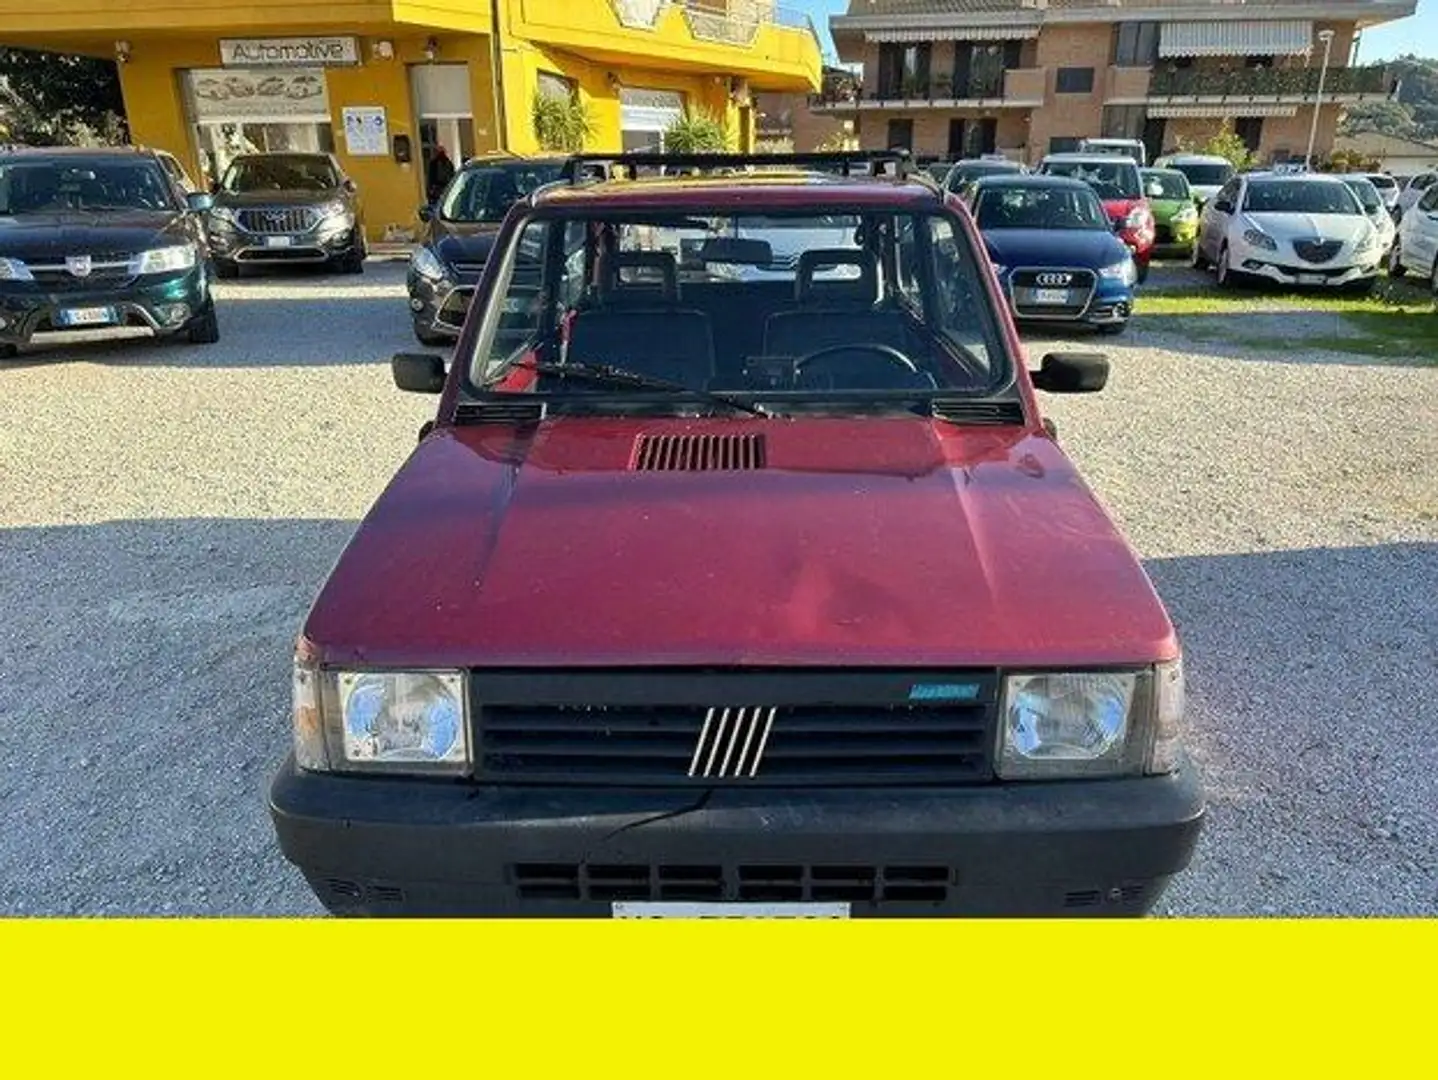 Fiat Panda - 2